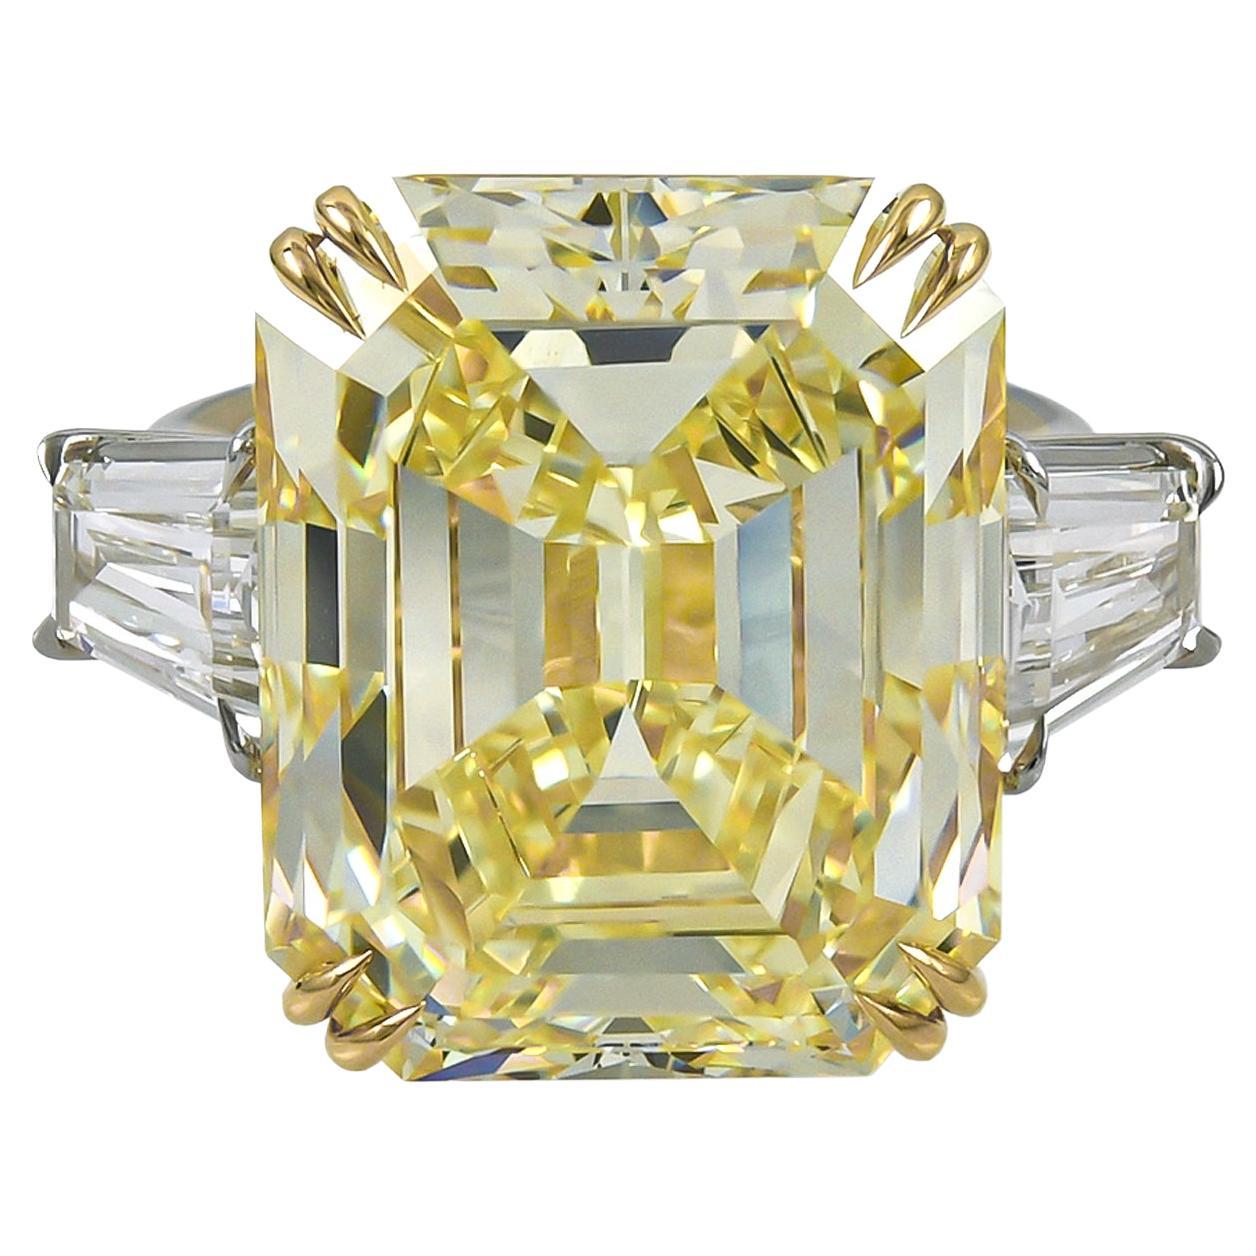 Spectra Fine Jewelry, bague avec diamant jaune fantaisie de 23,16 carats certifié GIA